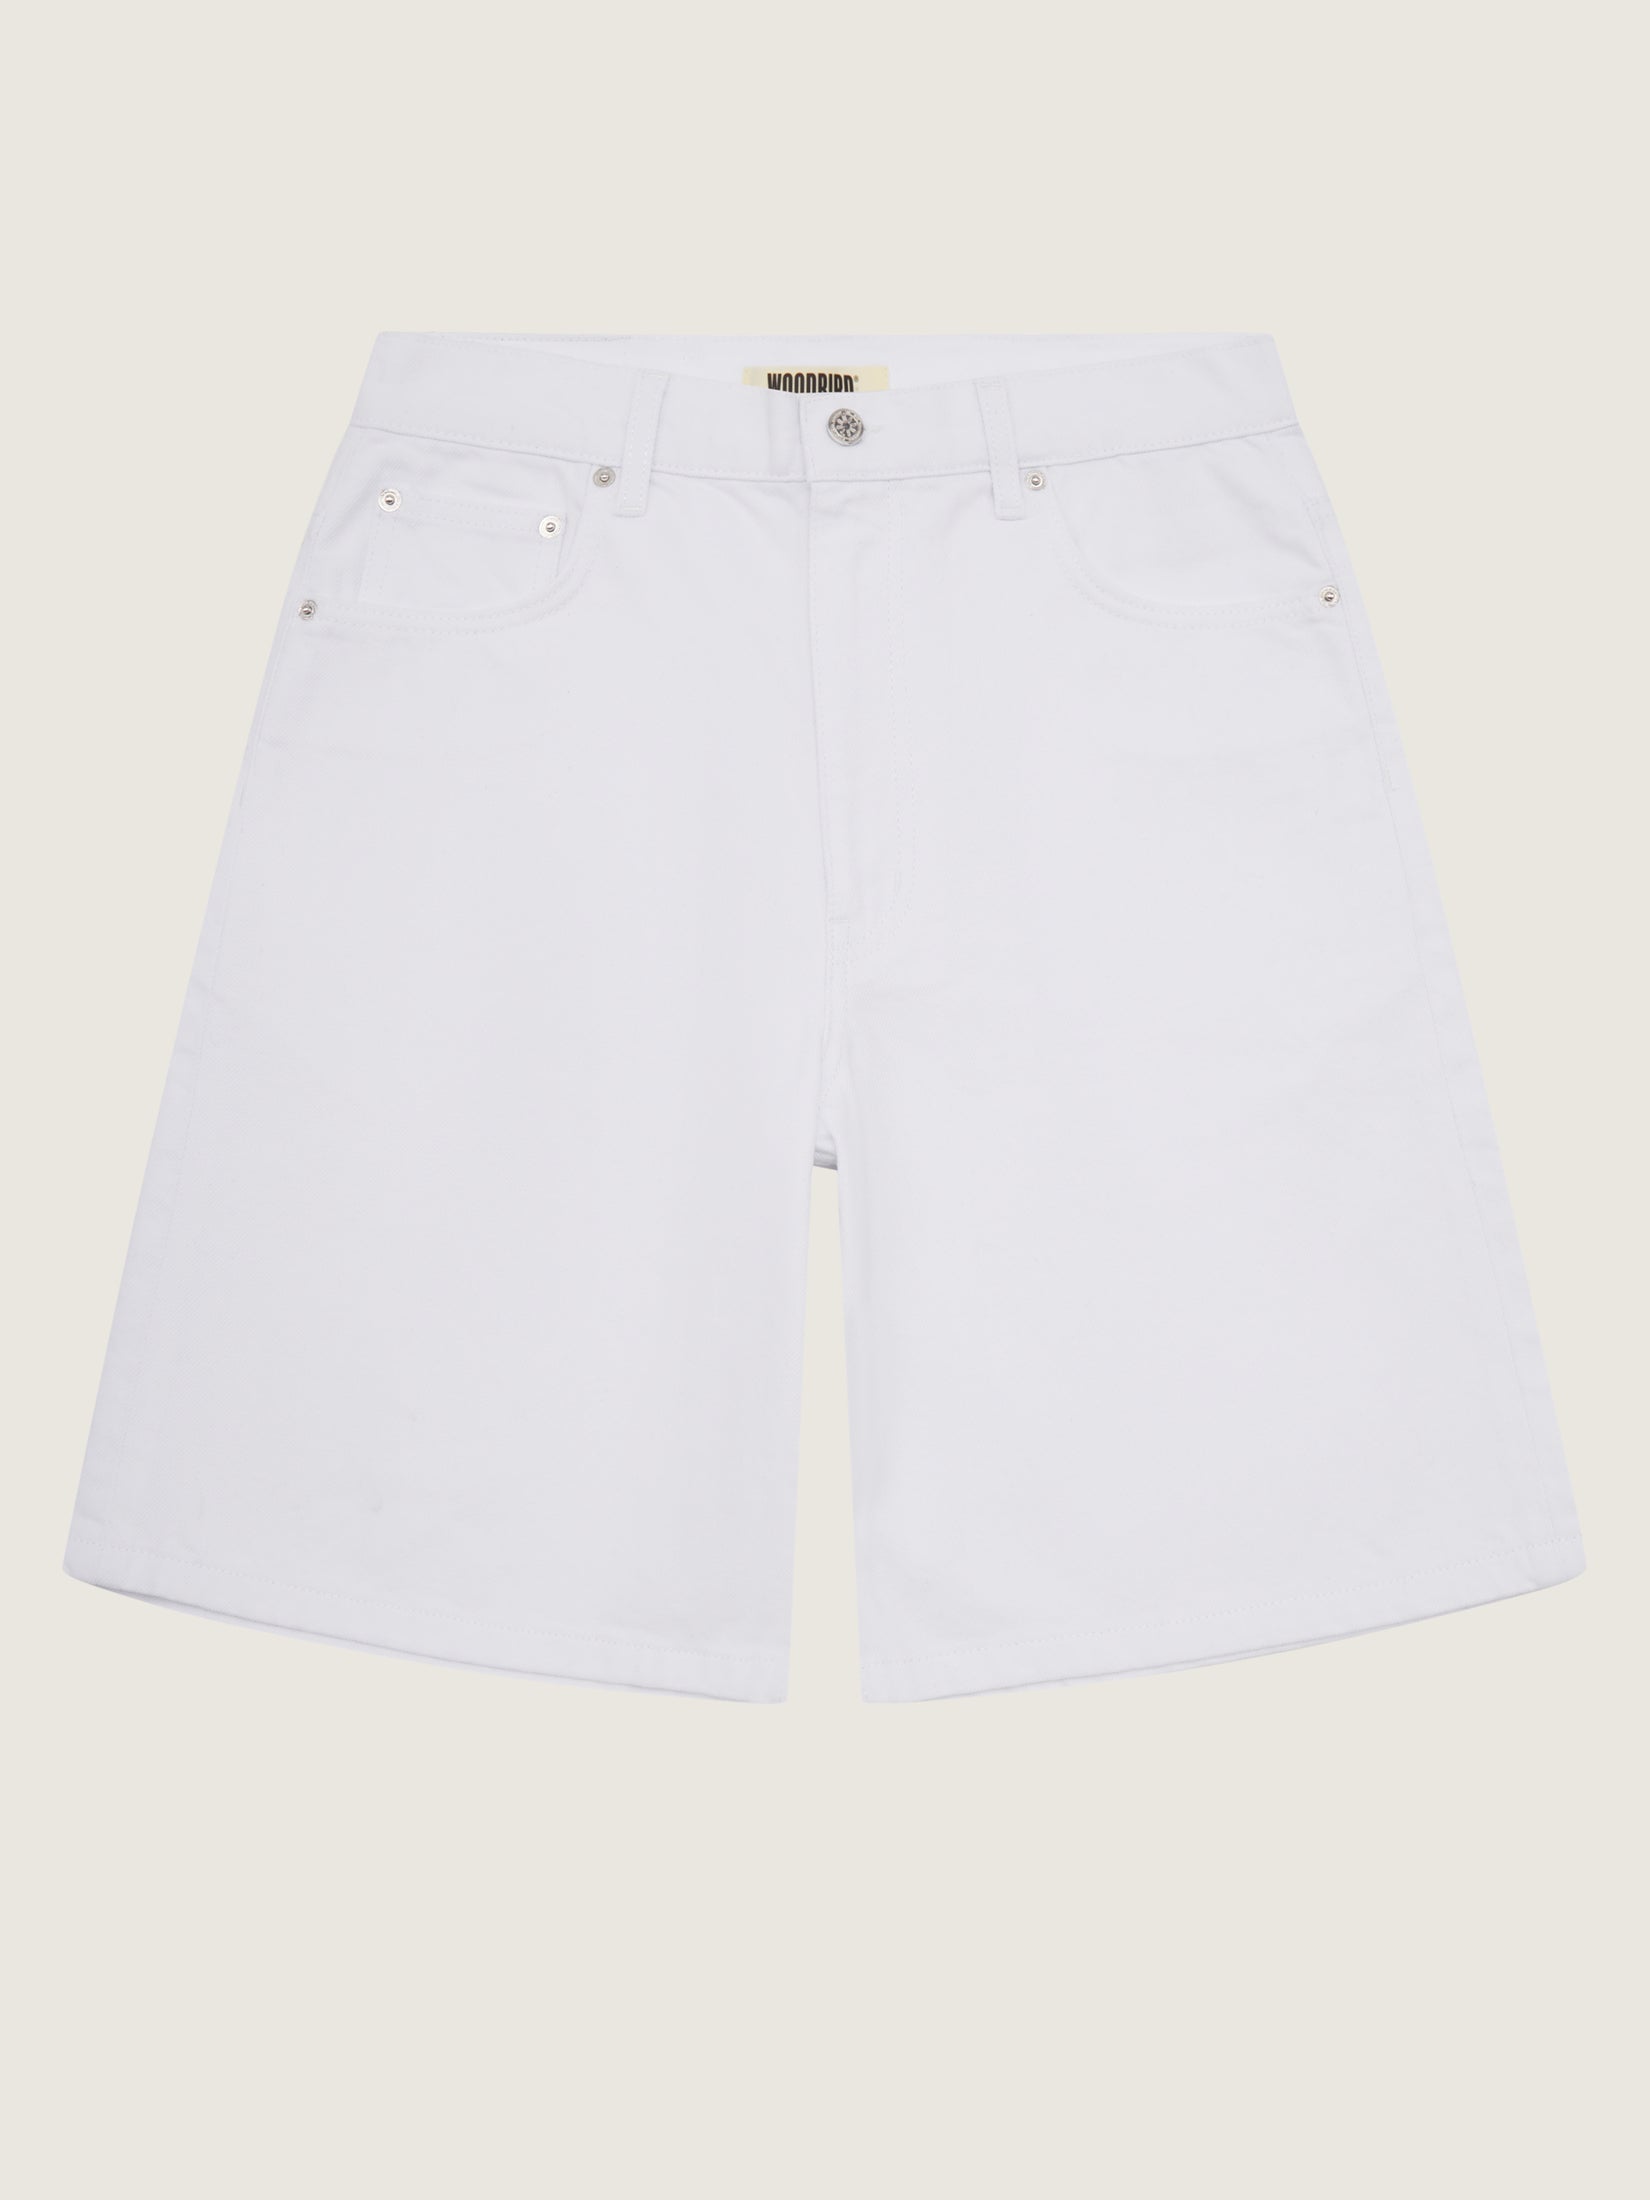 Woodbird WBRami White Shorts Shorts White